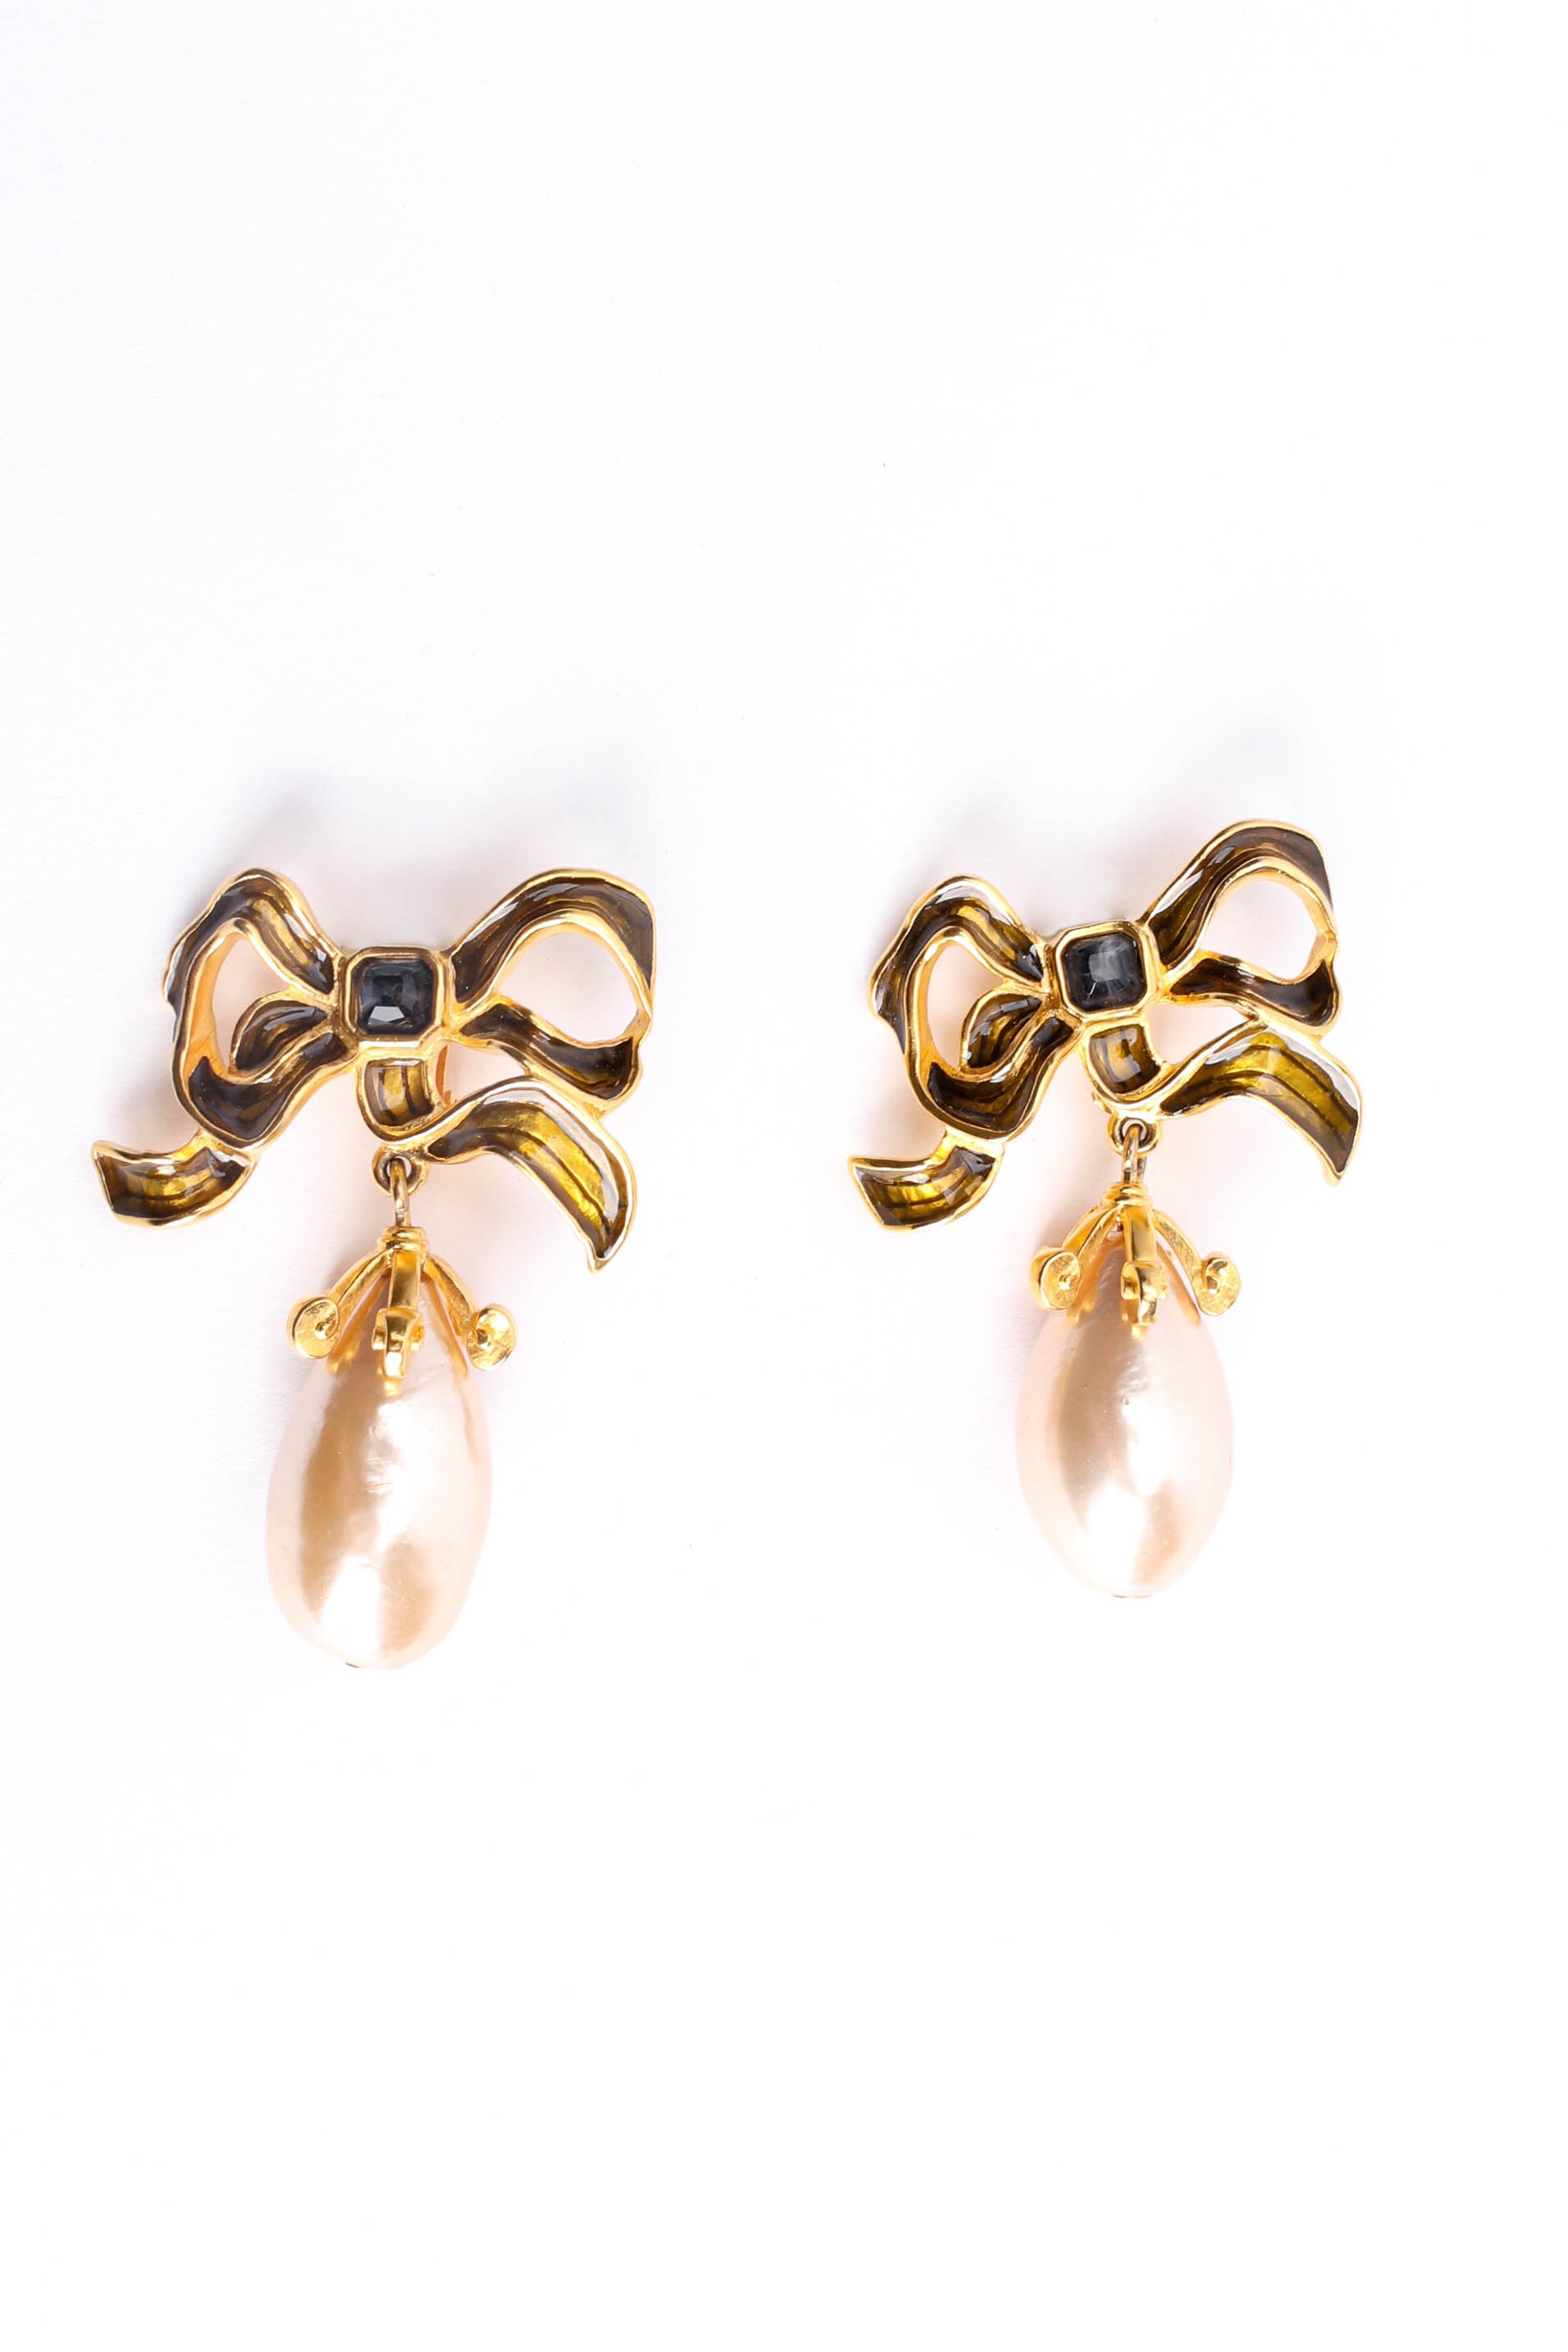 Vintage Karl Lagerfeld Flowy Ribbon Pearl Drop Earrings side by side @ Recess LA